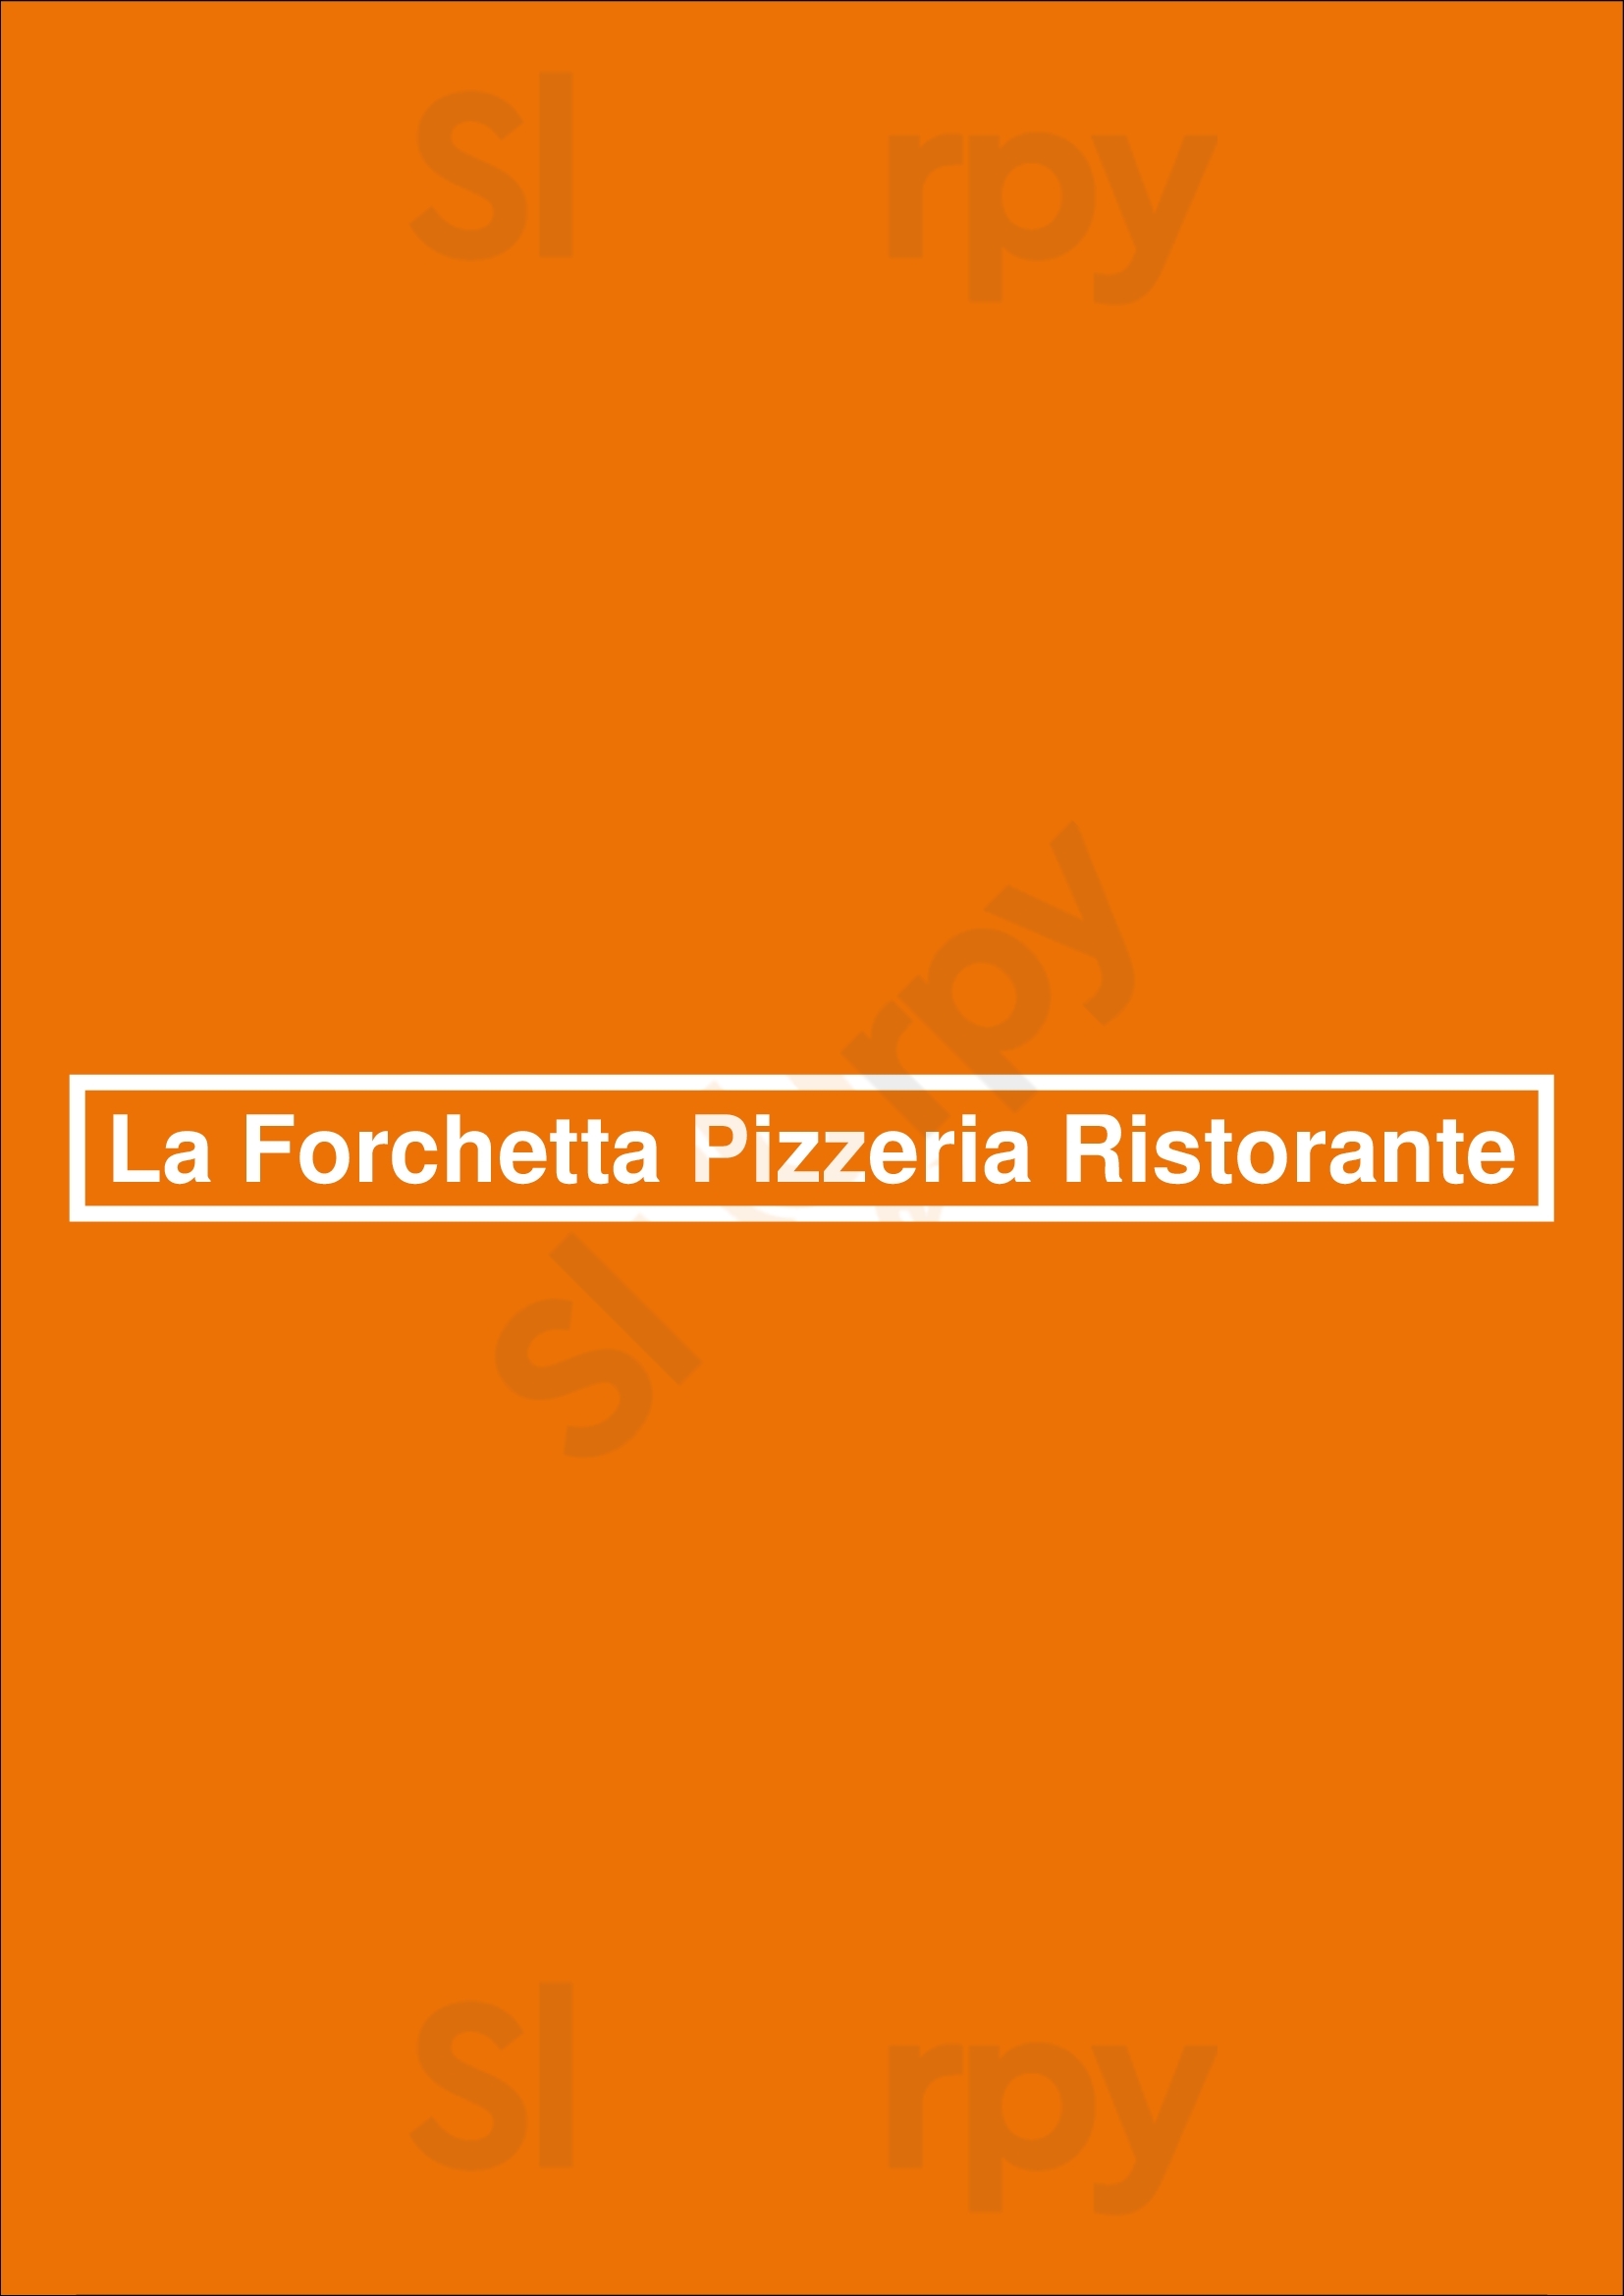 La Forchetta Pizzeria Ristorante Barcelona Menu - 1